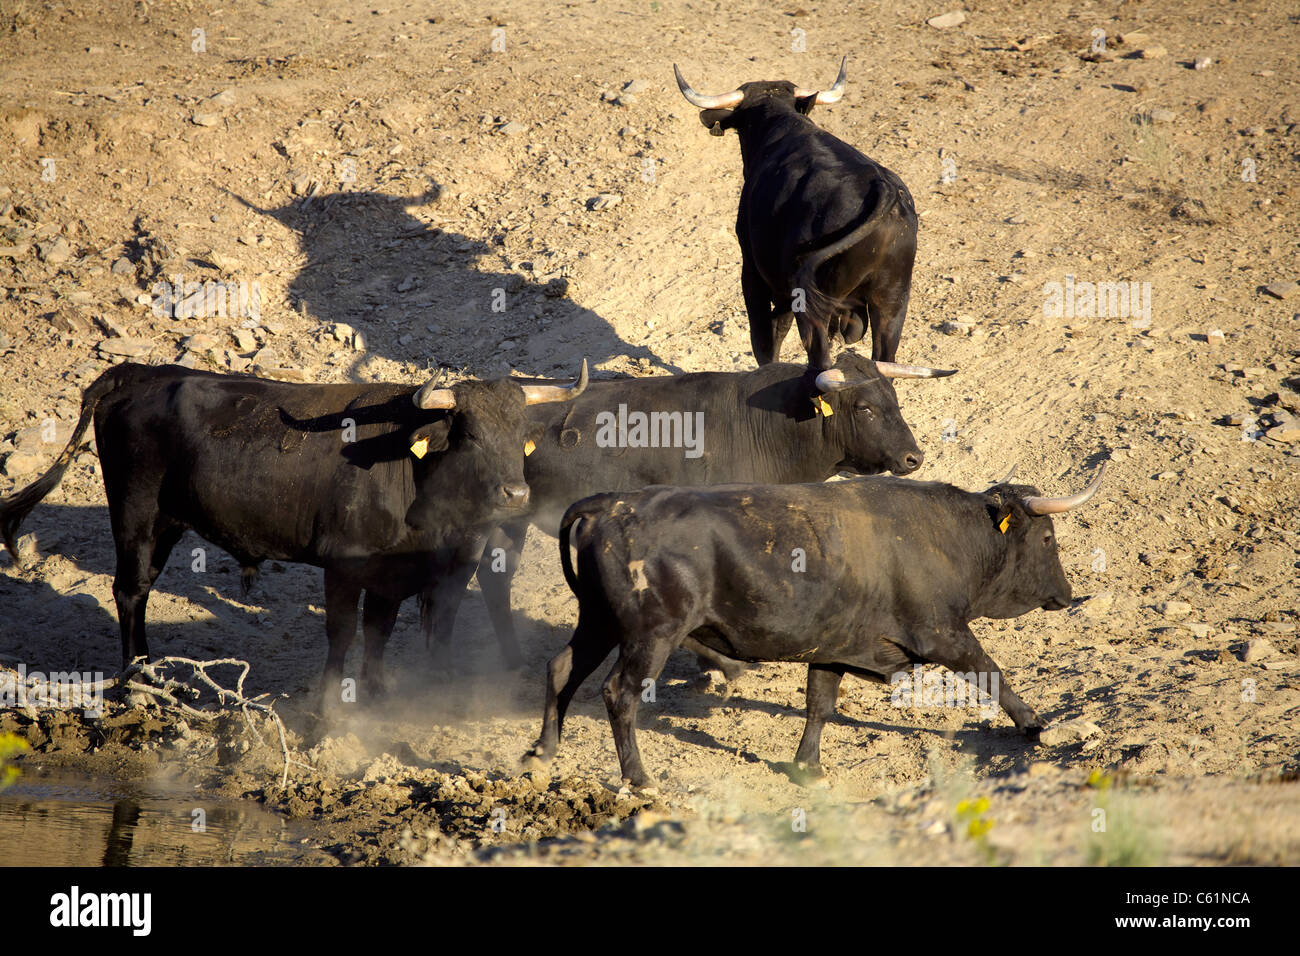 Black Bulls, Extremadura, Spain, Spanish, Iberia, Europe, European, animal, animals, livestock, nature, bull, cattle, Jack, Cox, Stock Photo